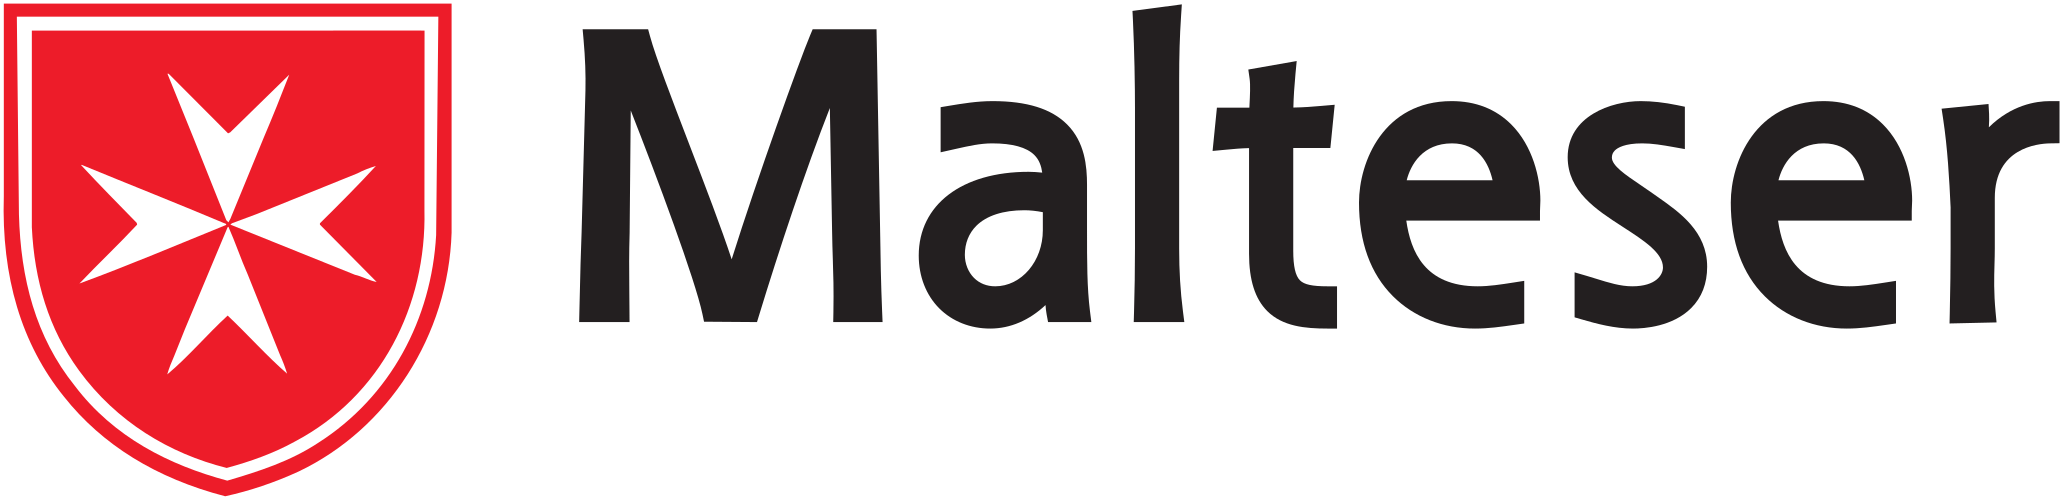 Malteser Gruppe Logo